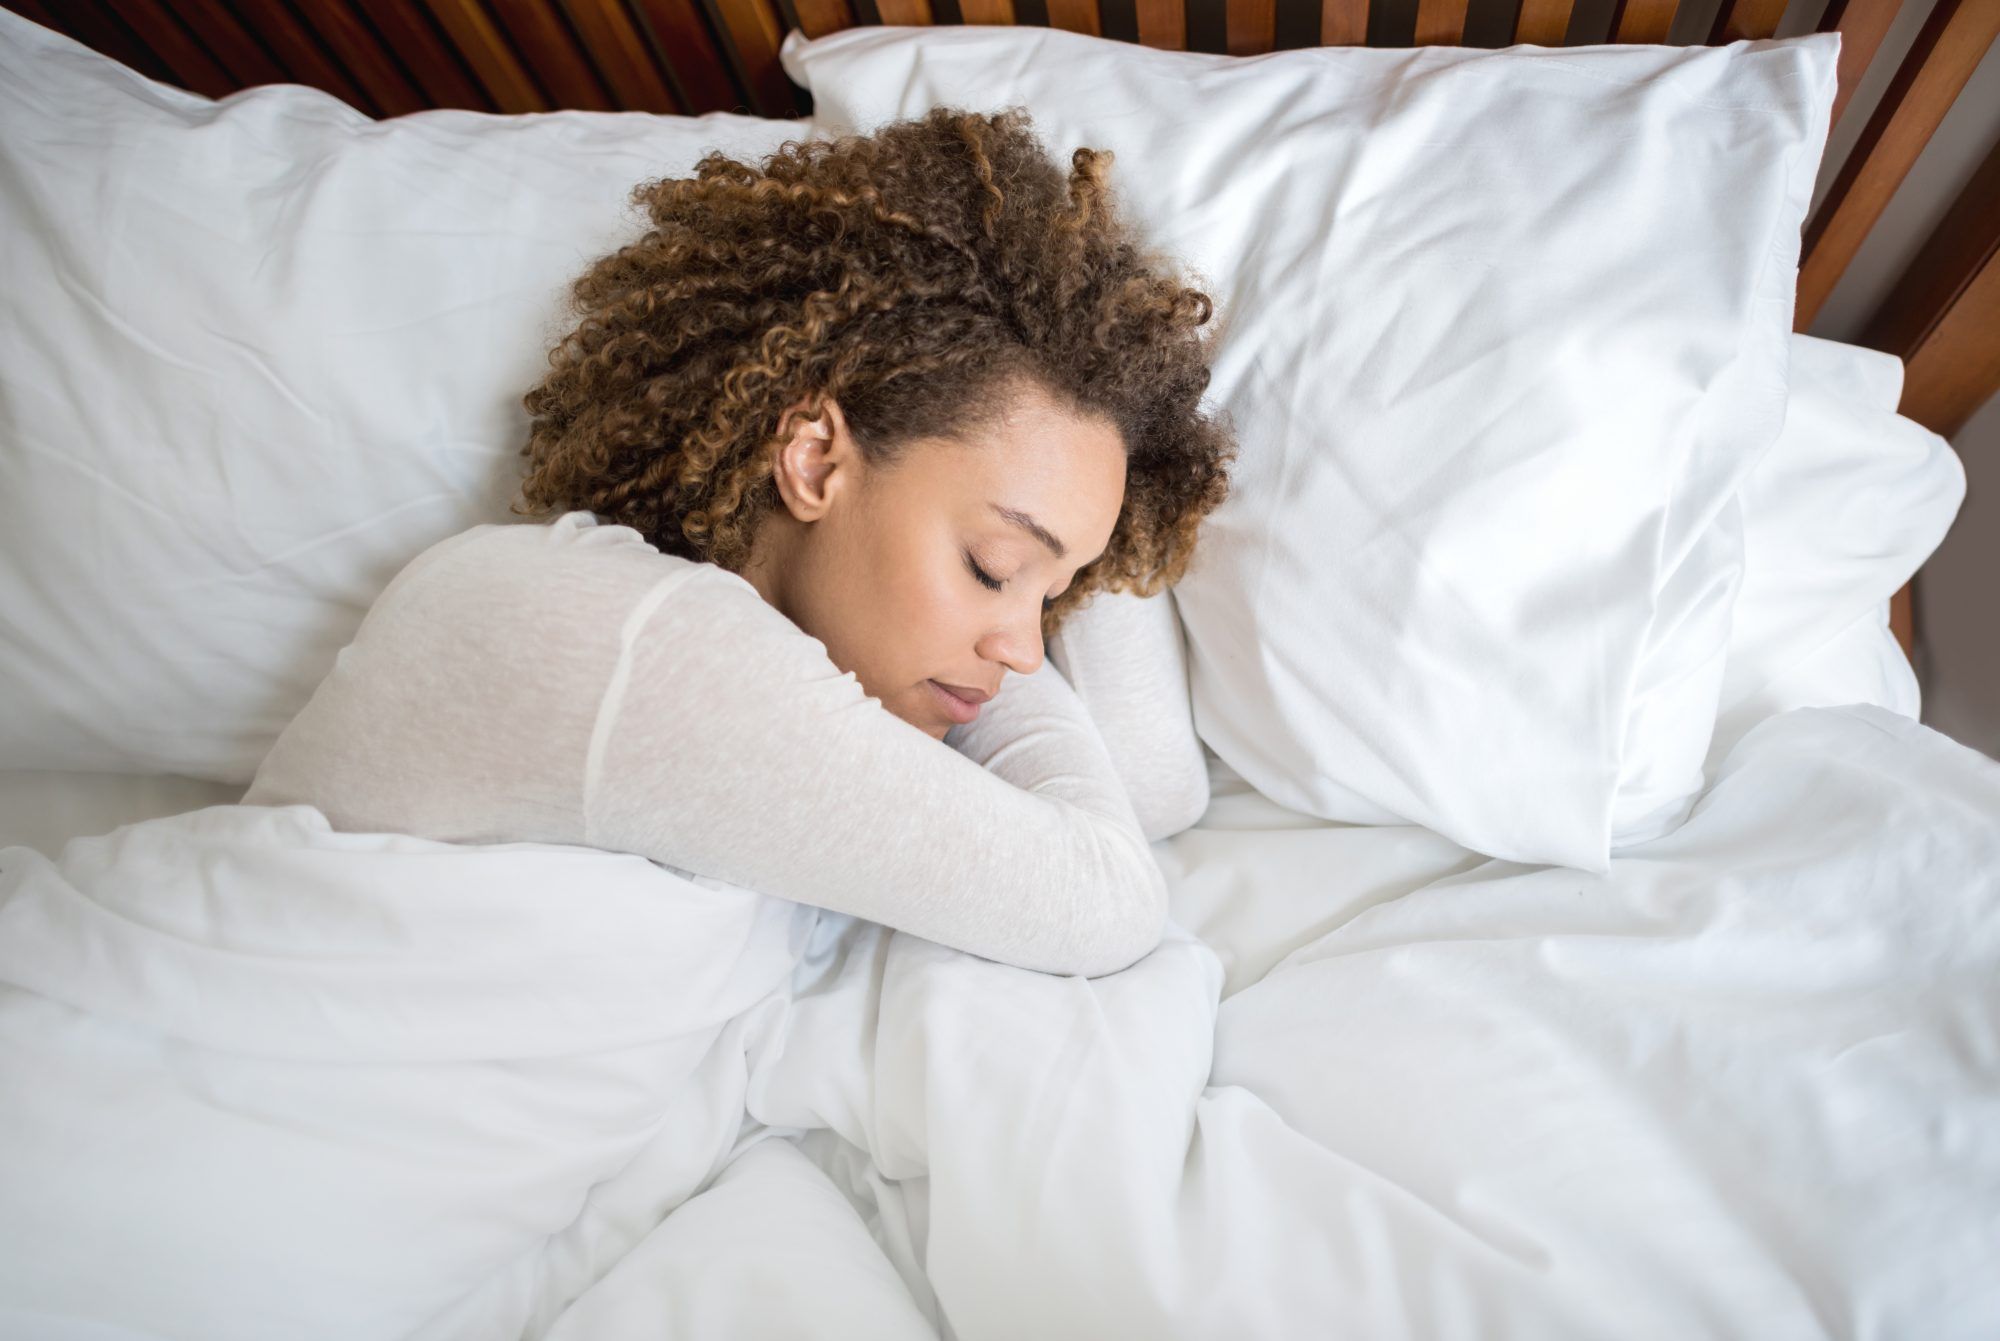 Daha İyi Uyumanıza Yardımcı Olabilecek 11 Sağlıklı Alışkanlık